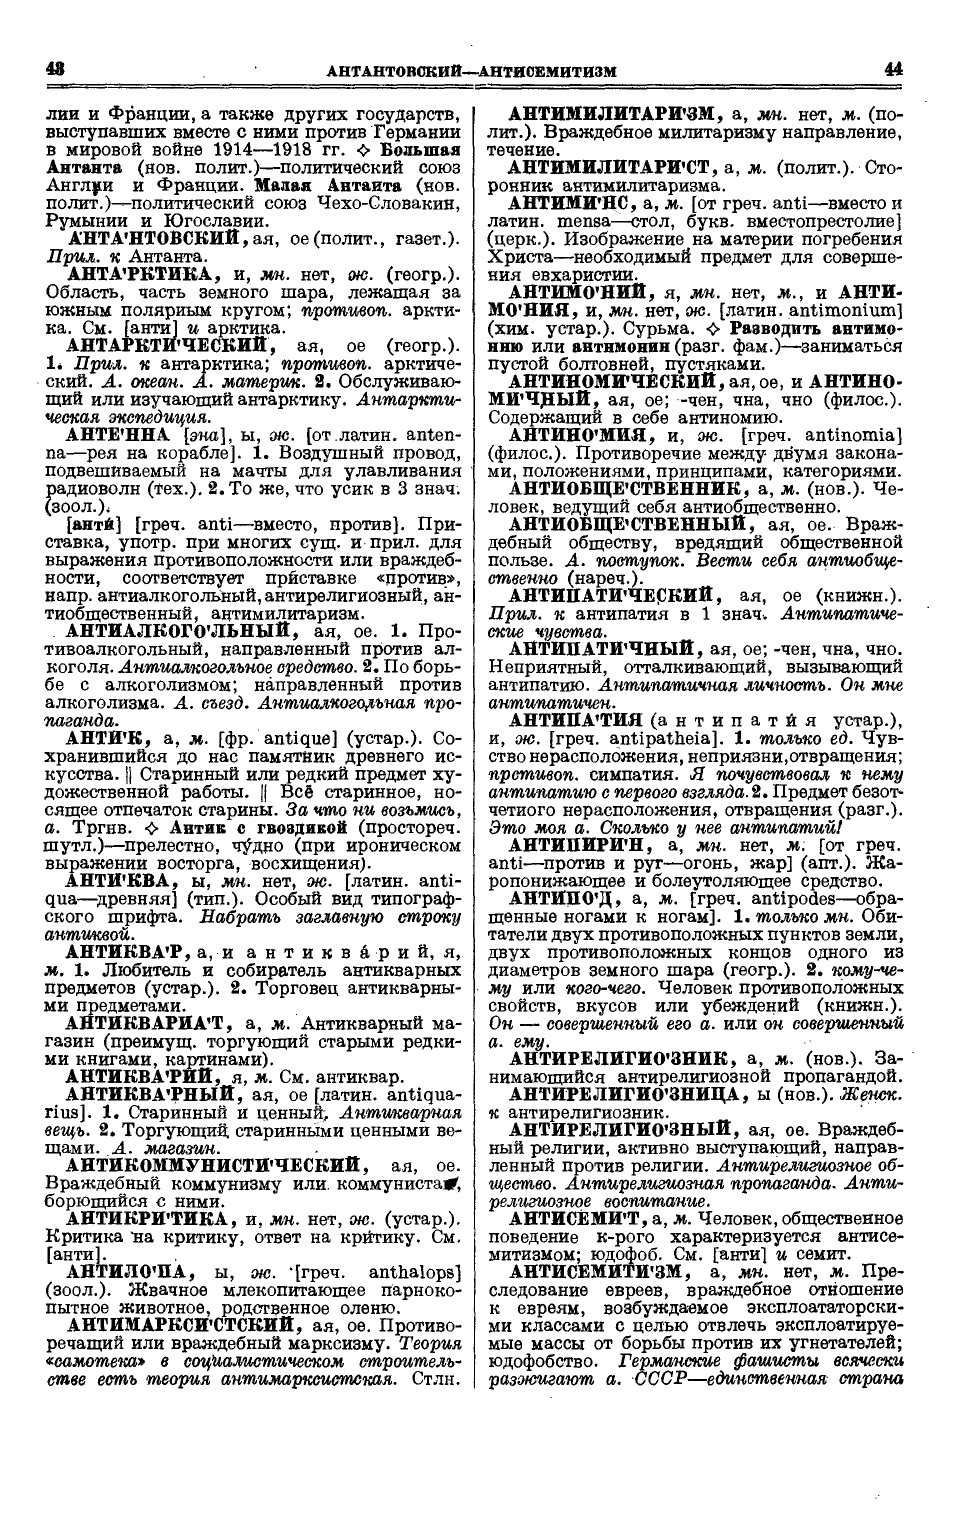 Фотокопия pdf / скан страницы 60 толкового словаря Ушакова (том 1)